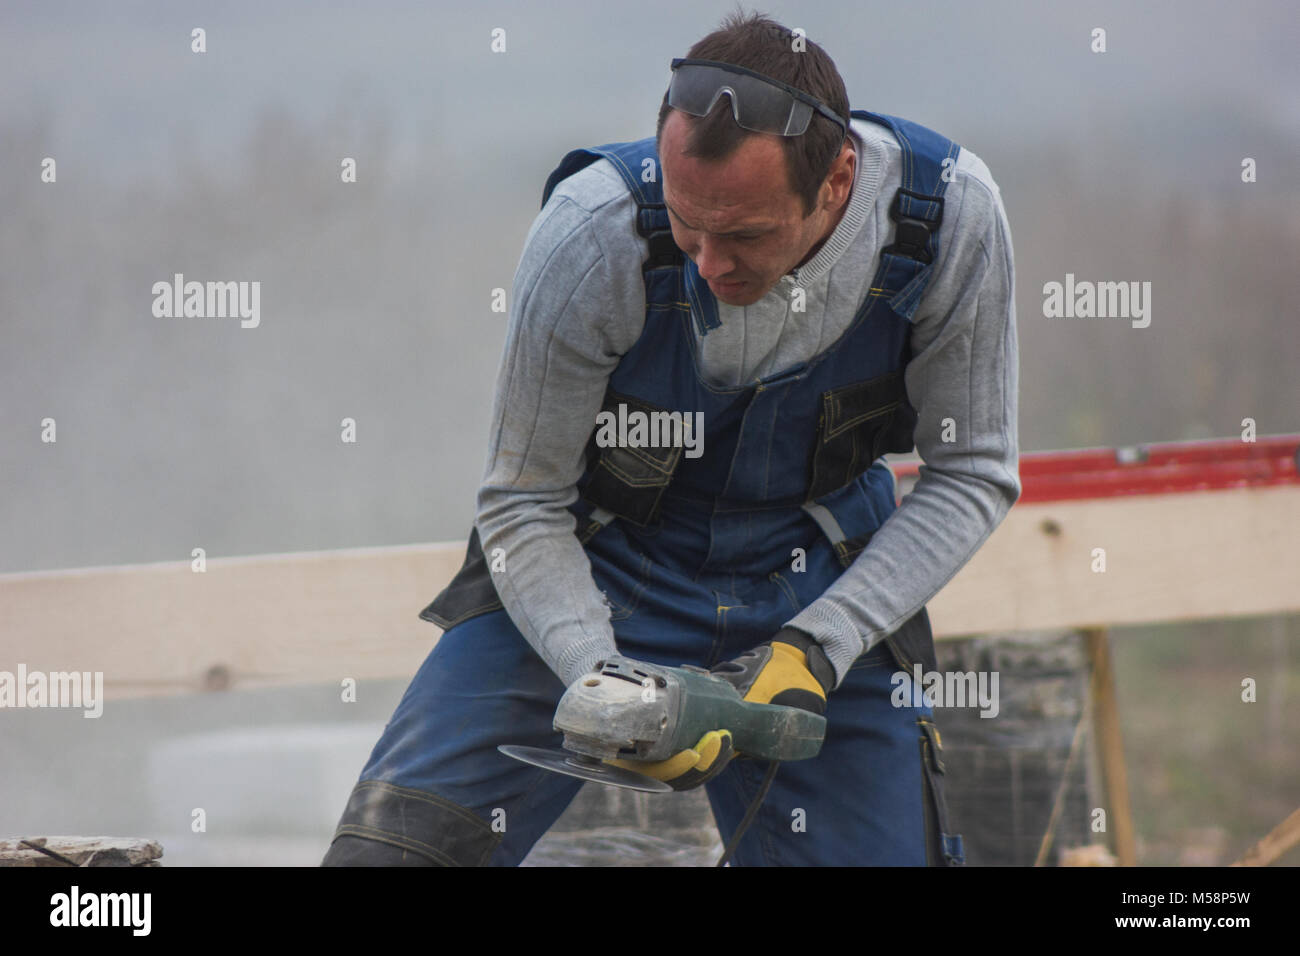 L'homme travailleur builder travailler avec une scie circulaire à l'extérieur, volant autour de la sciure Banque D'Images